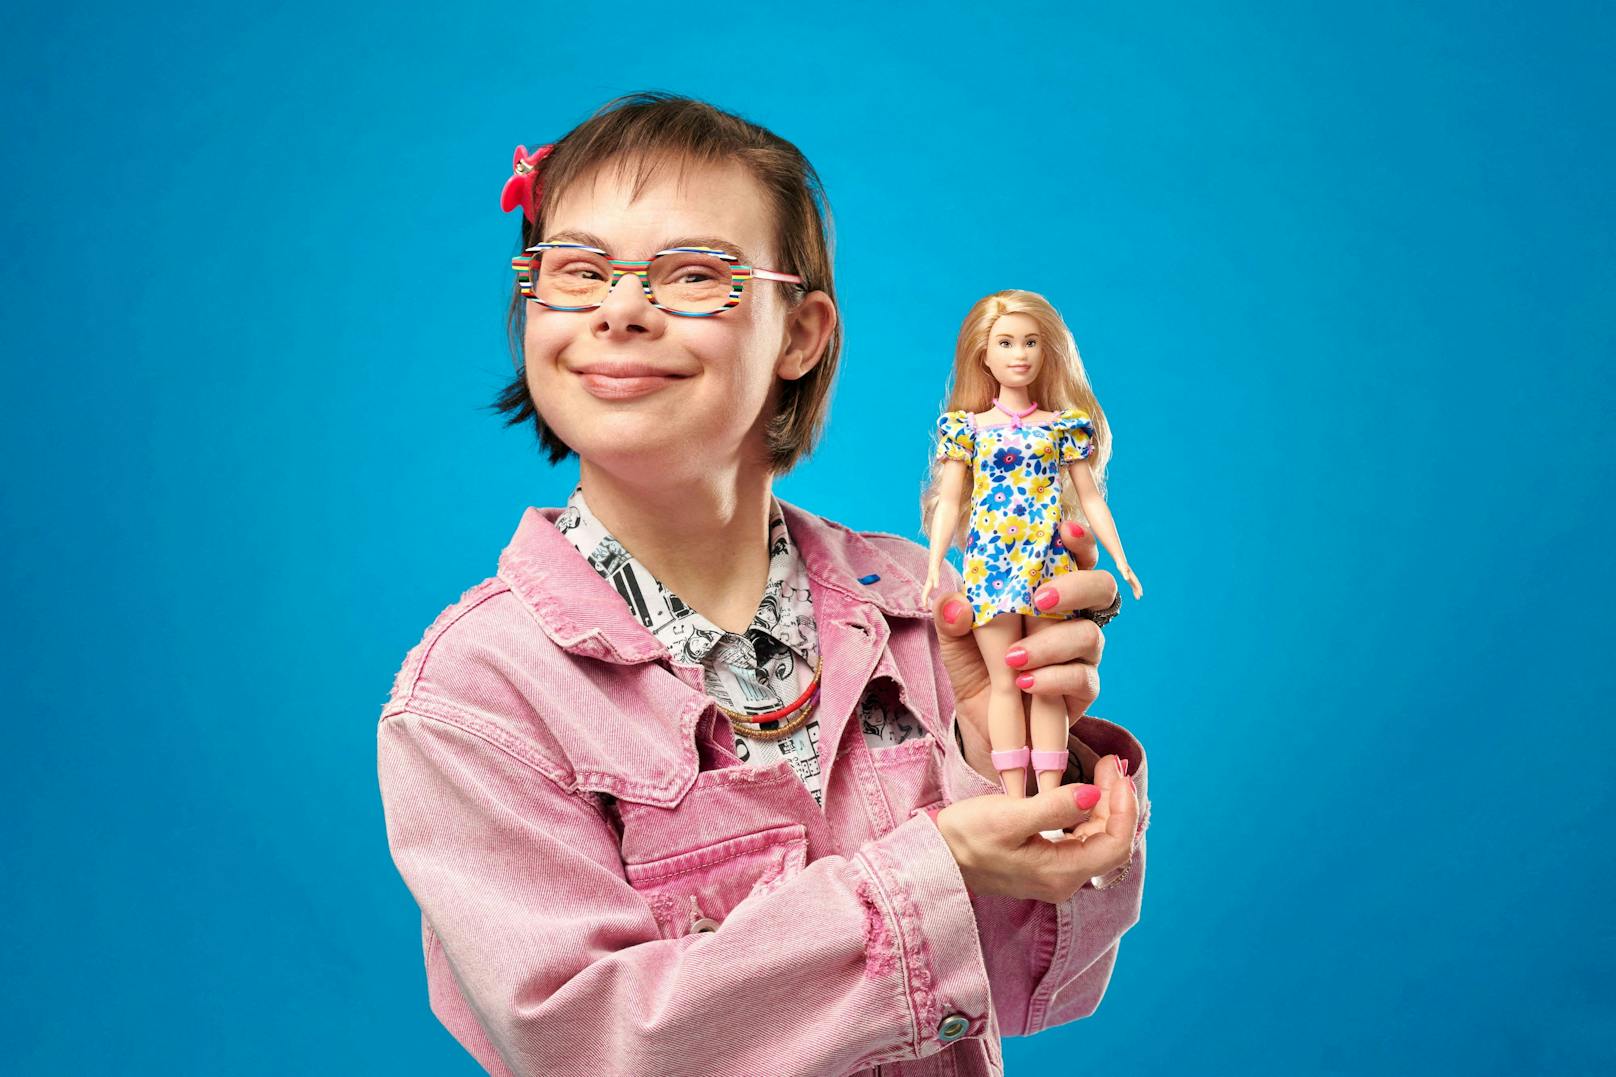 Die Barbie-Puppe mit Downsyndrom weist die typischen Merkmale auf.